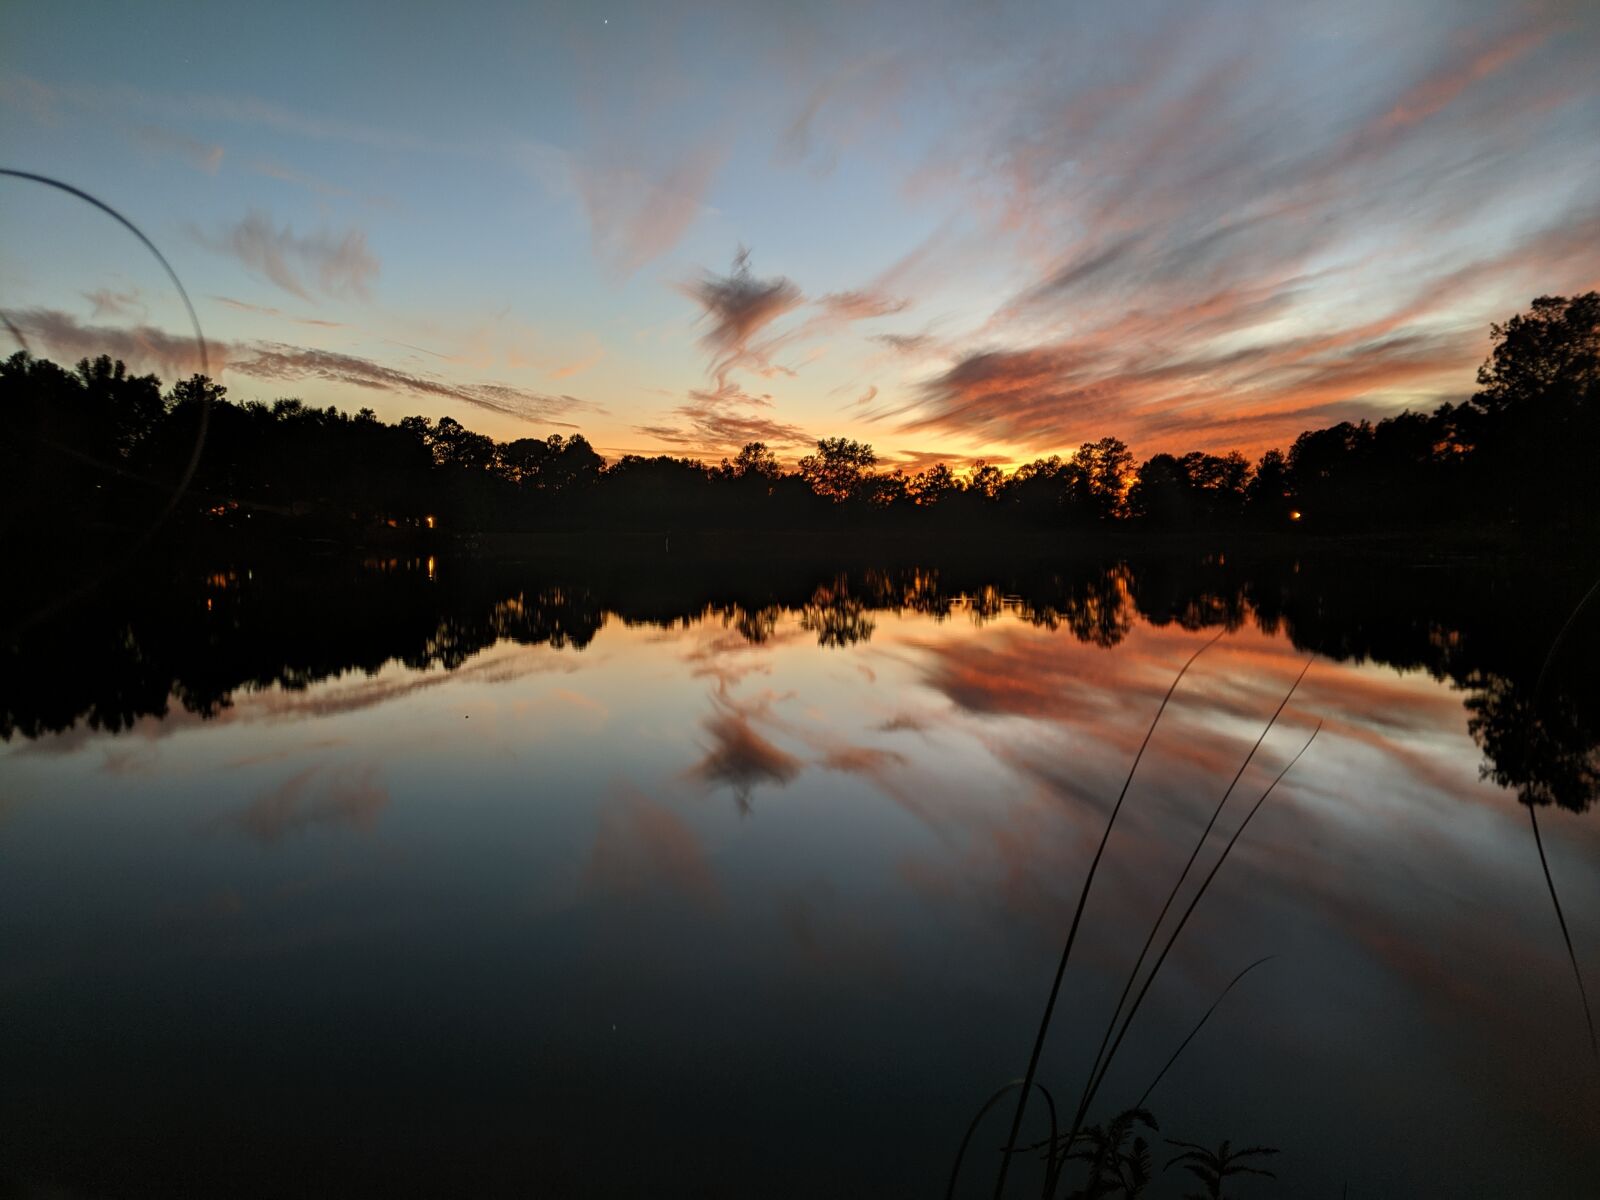 Google Pixel 2 sample photo. Sunset, lake, orange photography